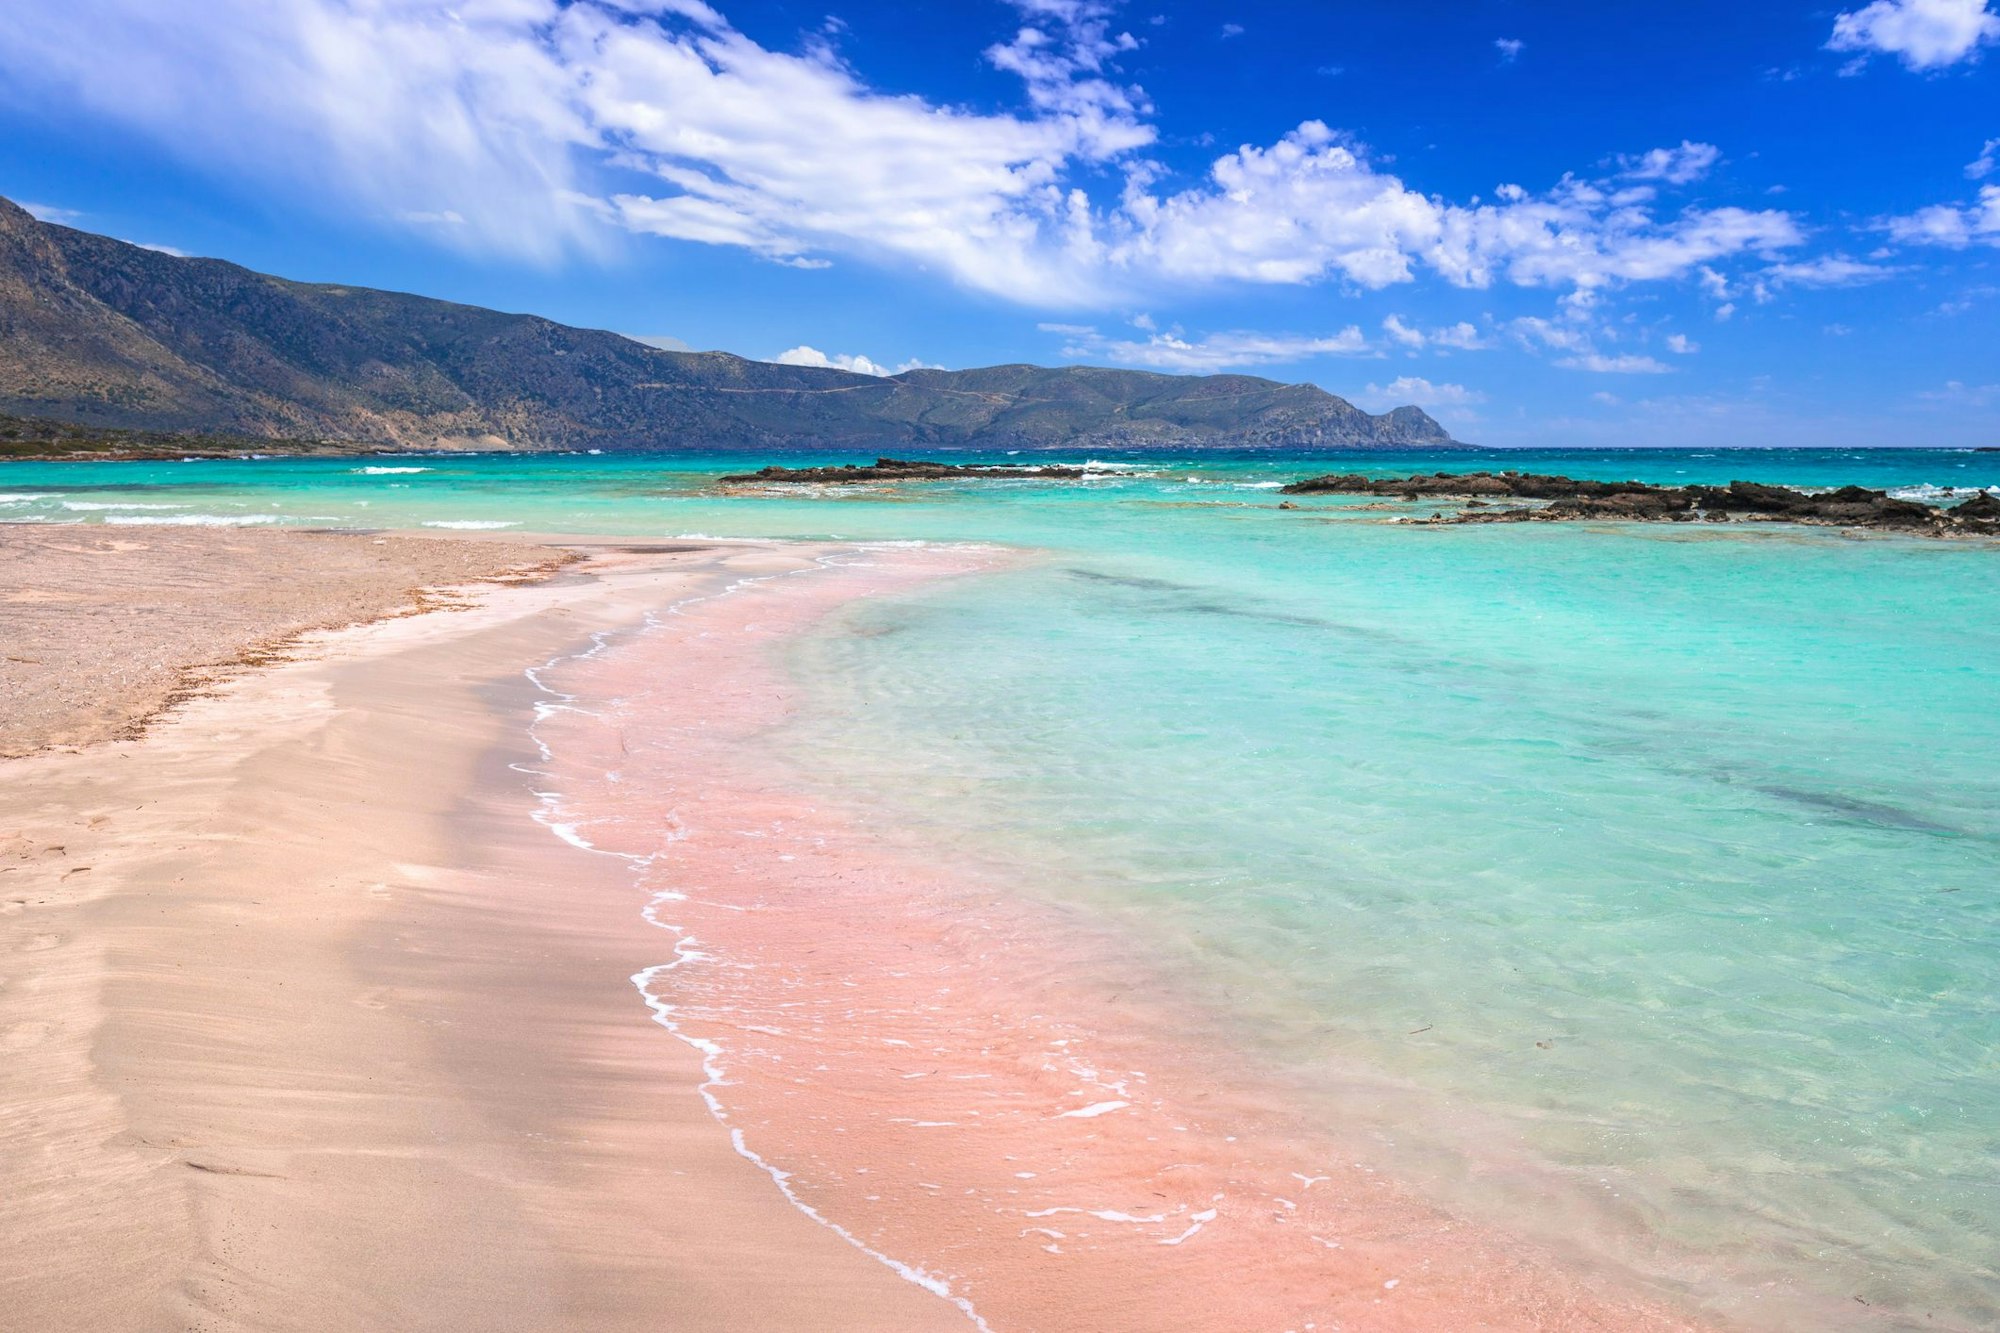 Der Sand am Strand von Elafonisi ist rosa gefärbt.